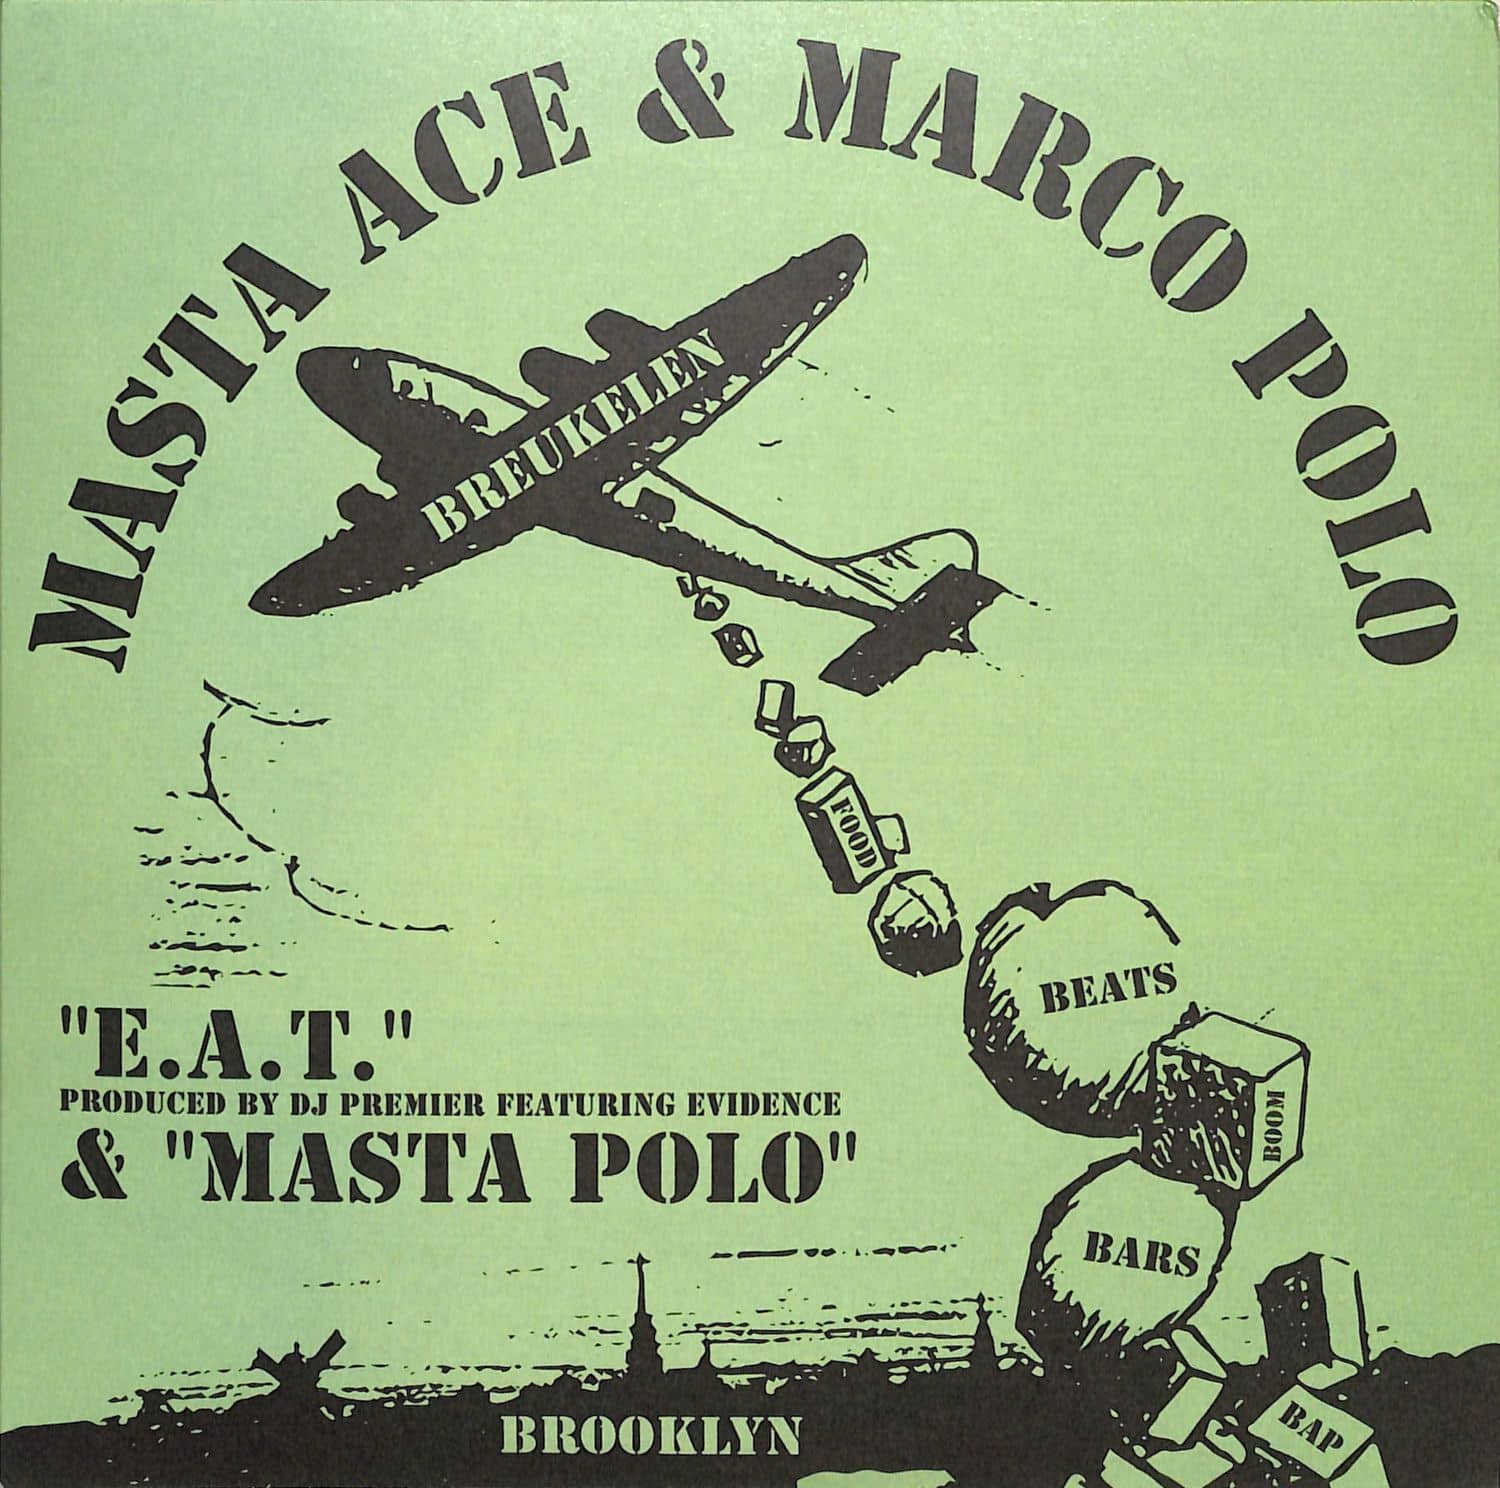 Masta Ace & Marco Polo - E.A.T. / MASTA POLO 